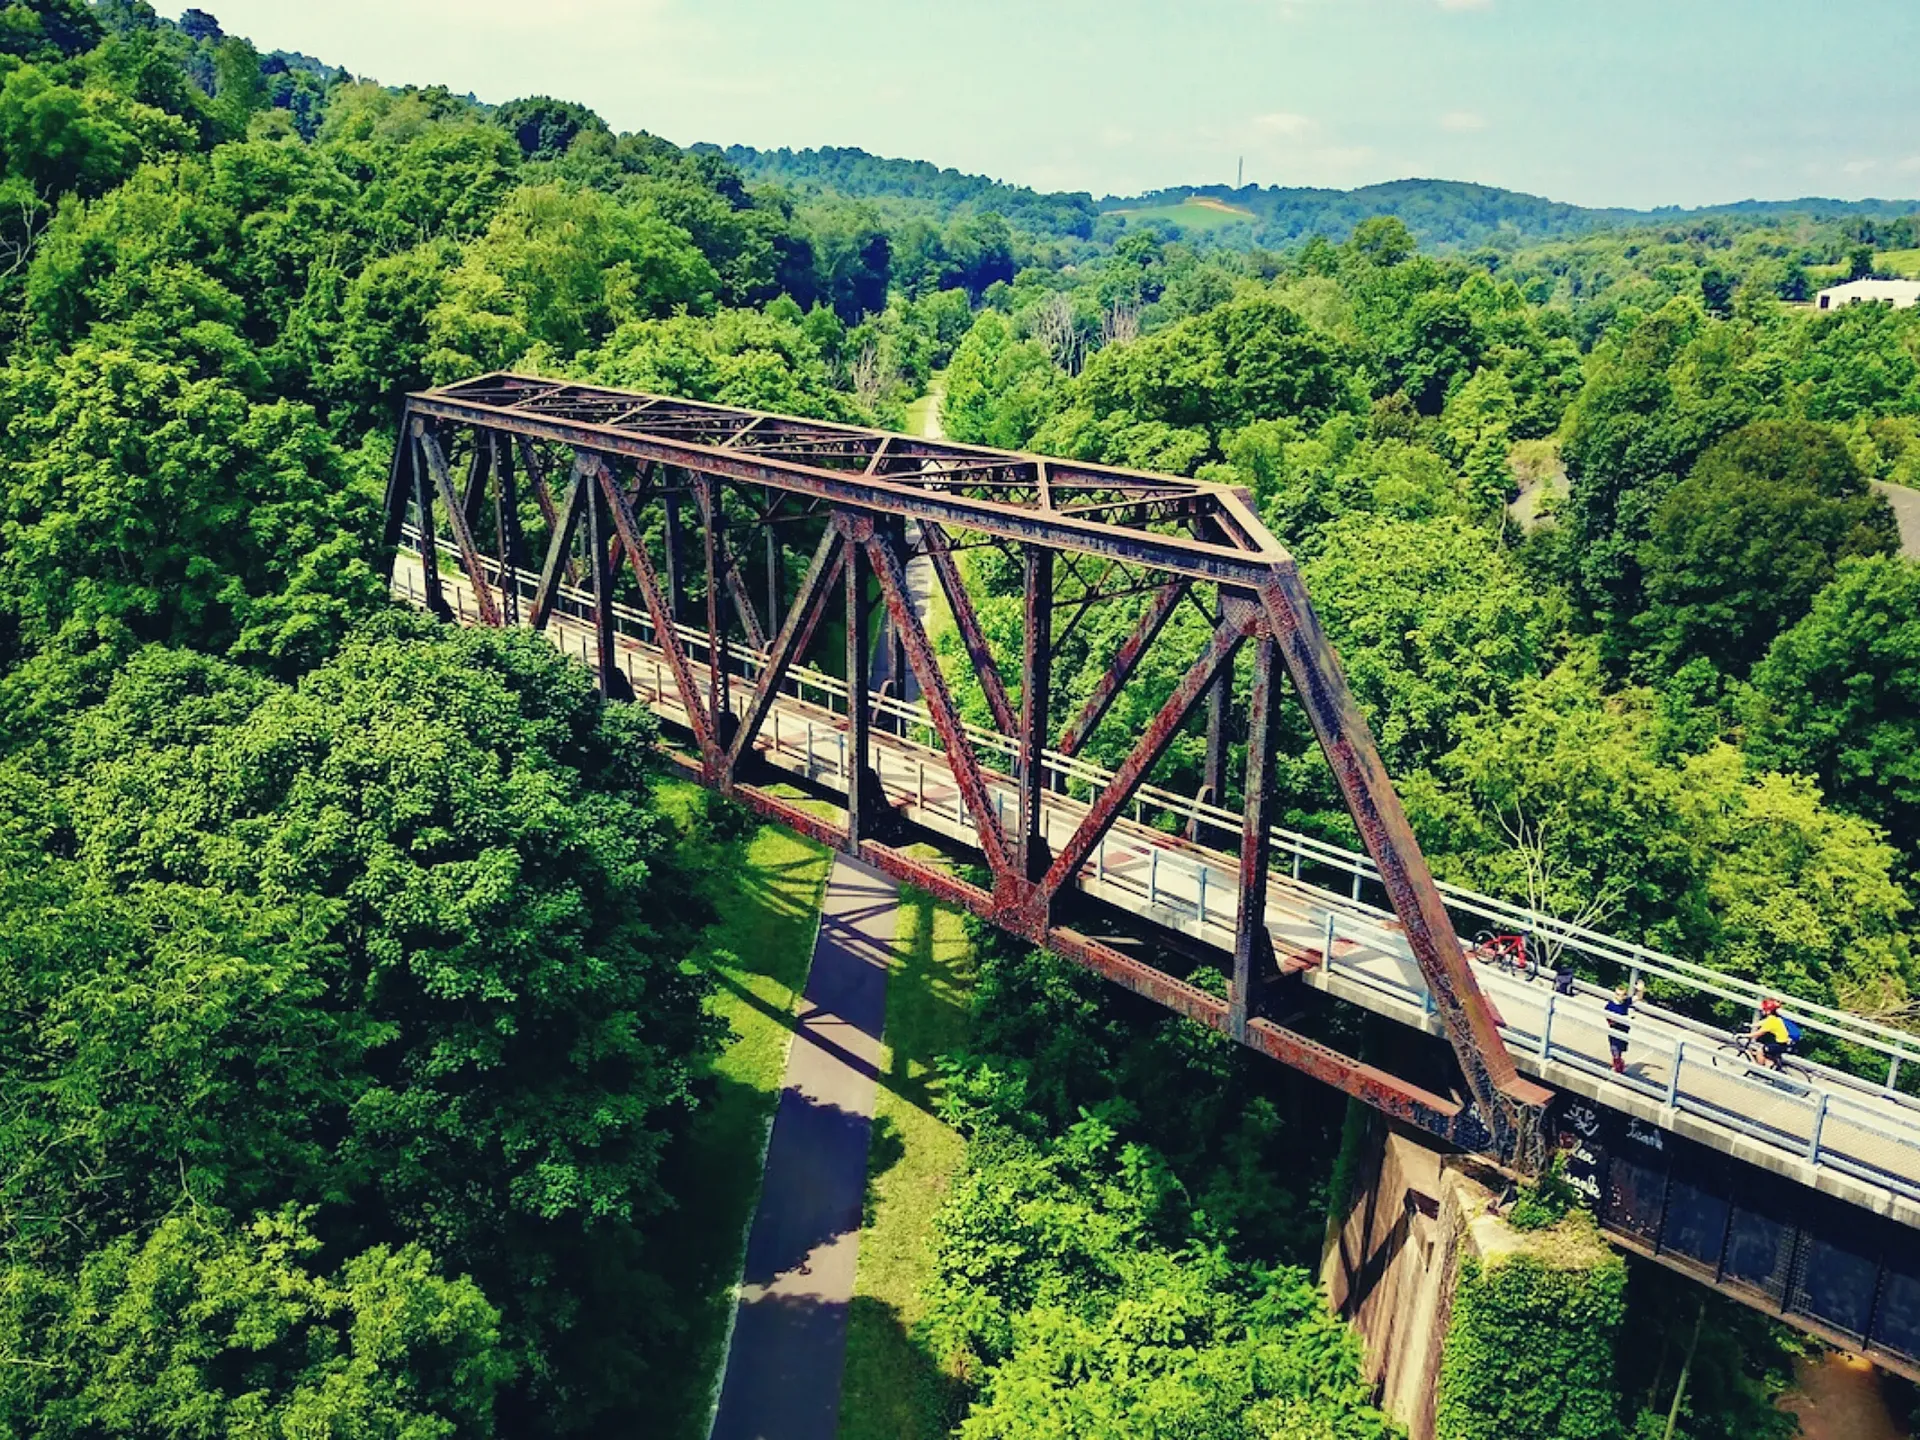 Panhandle Trail, sendero ferroviario en el sur de Pensilvania. (foto: Milo Bateman).